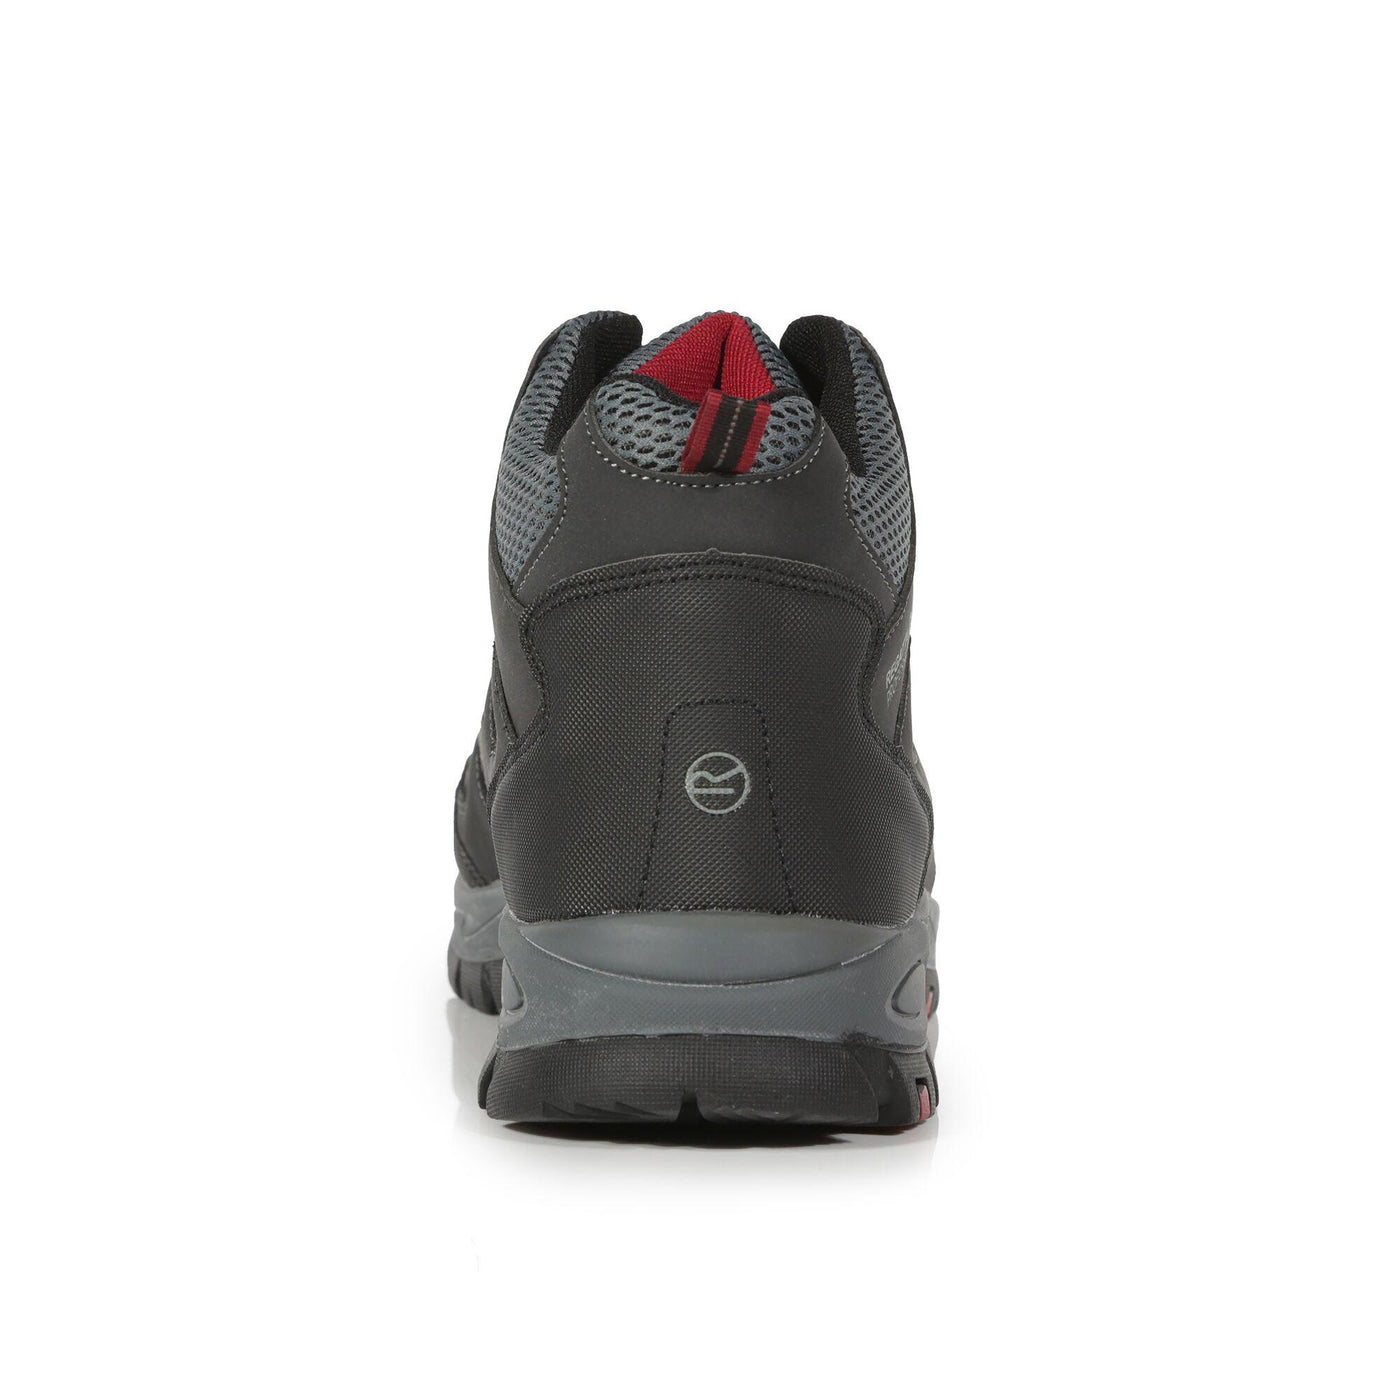 Regatta Professional Mens Mudstone Safety Hiker Boots Ash Rio Red 4#colour_ash-rio-red